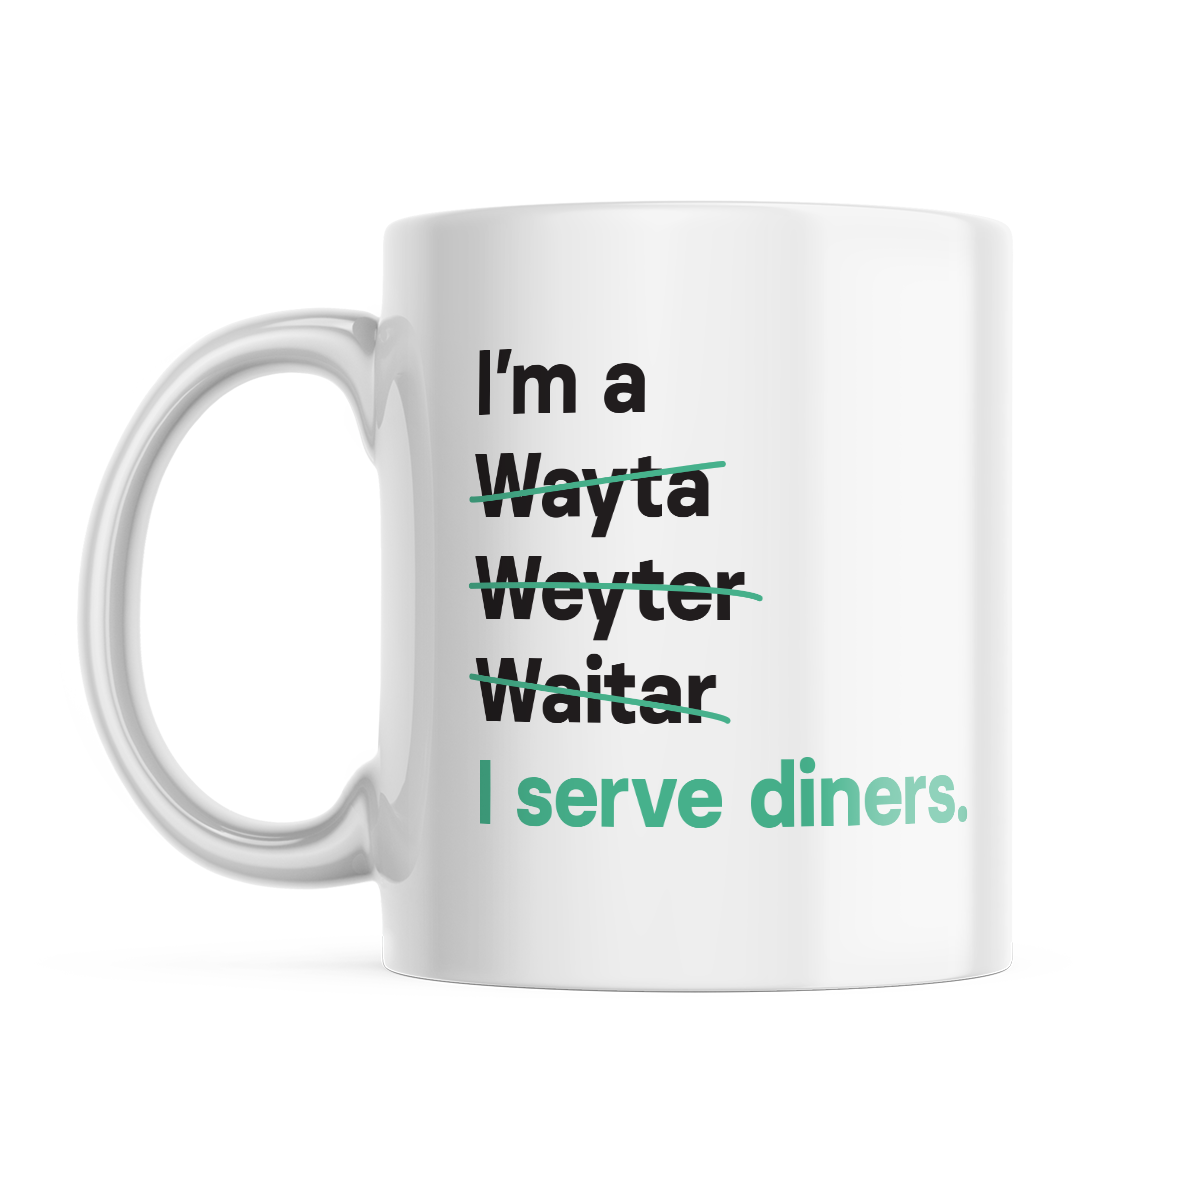 I'm a Waiter